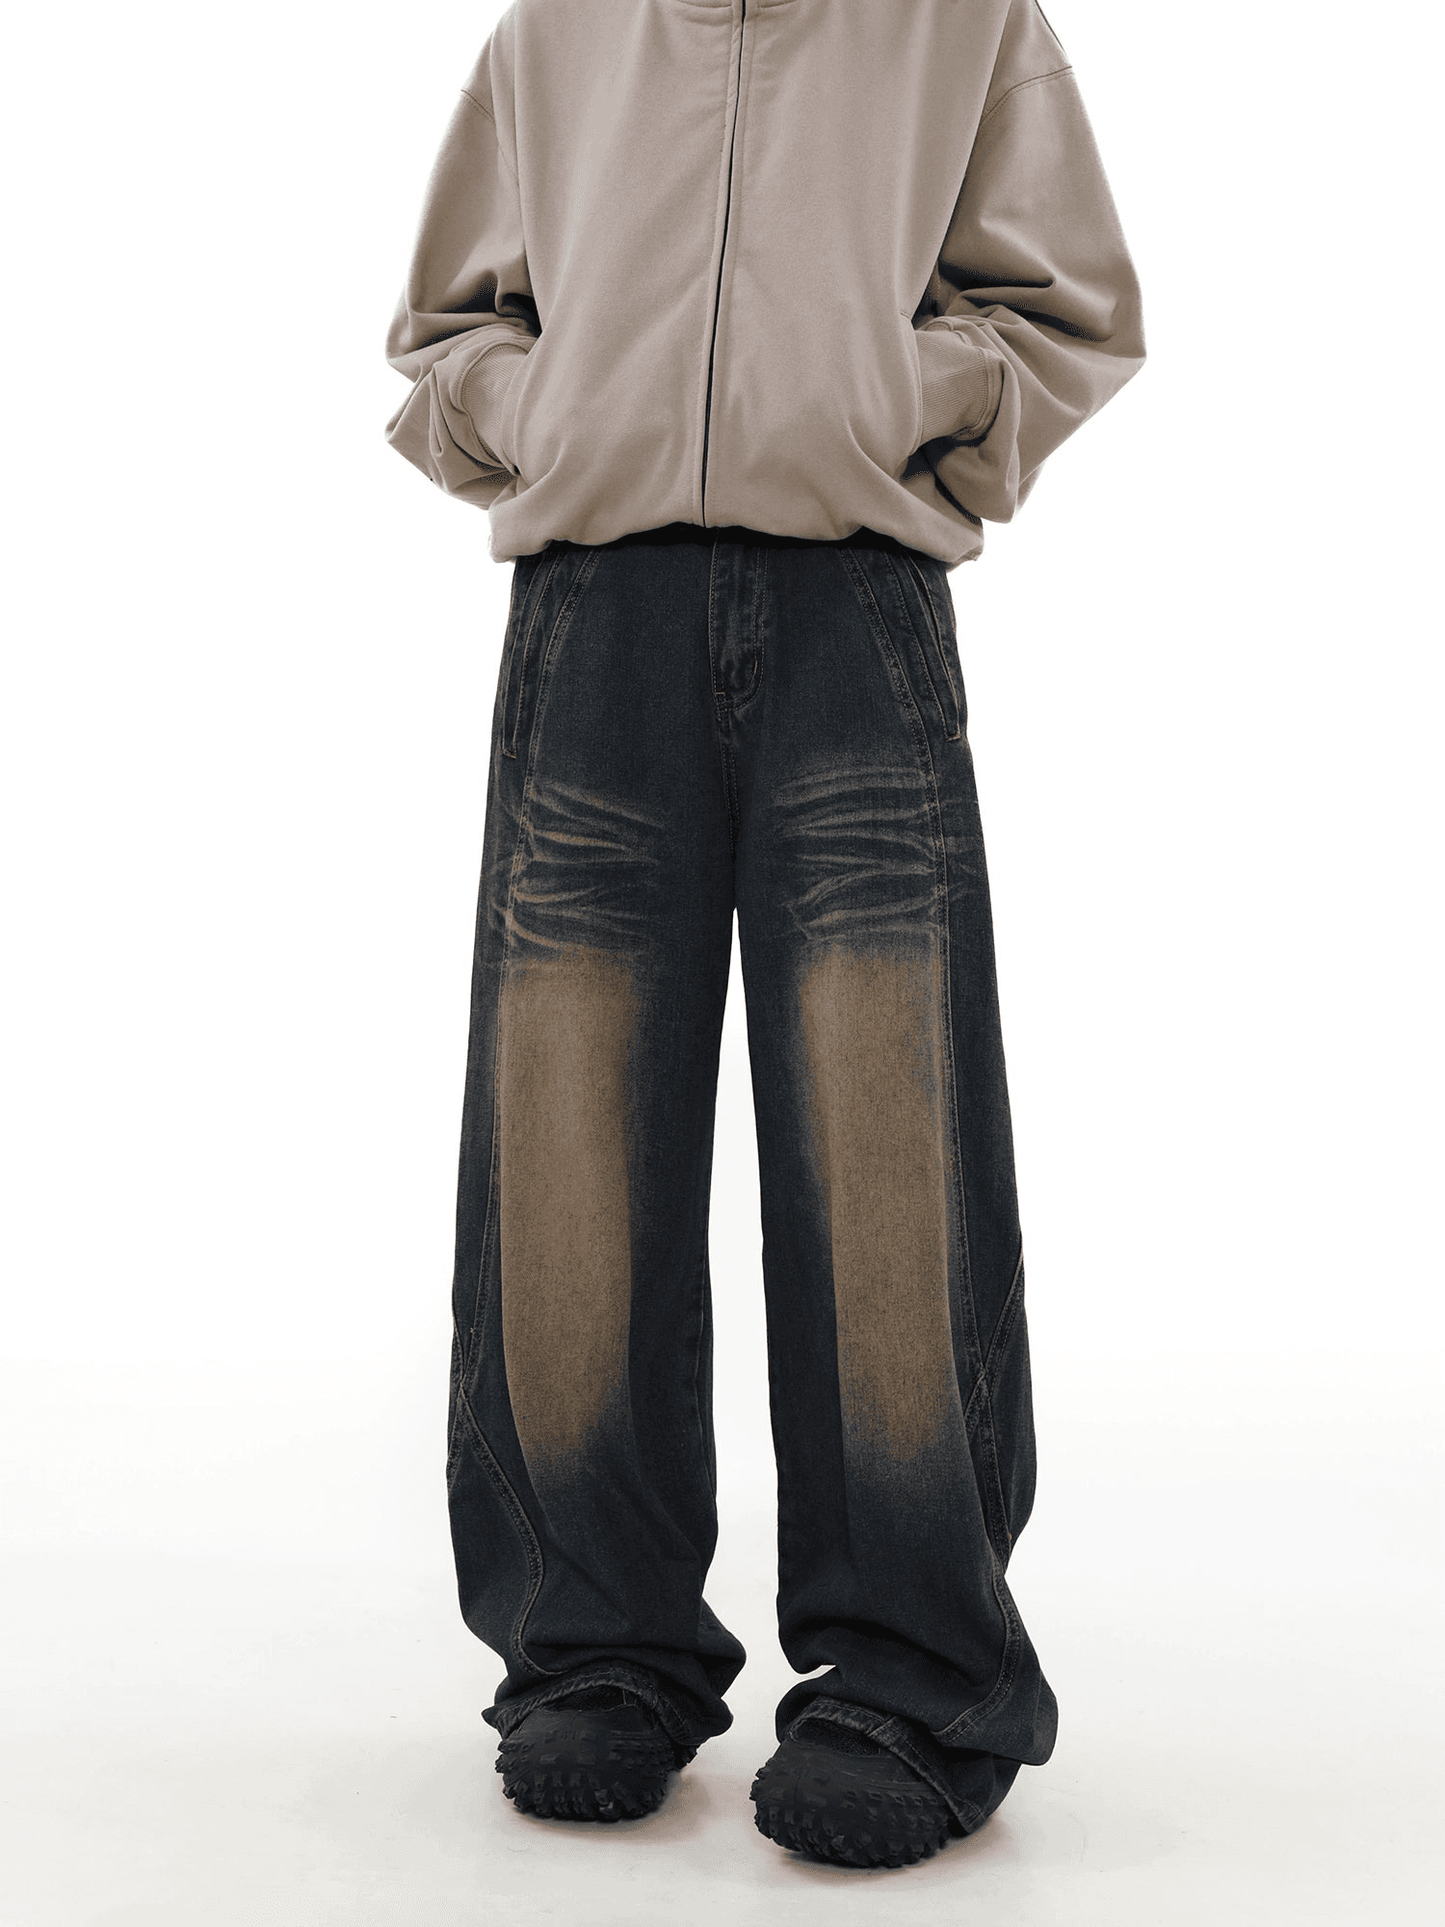 Washed Design Flare Denim Jeans WN3993